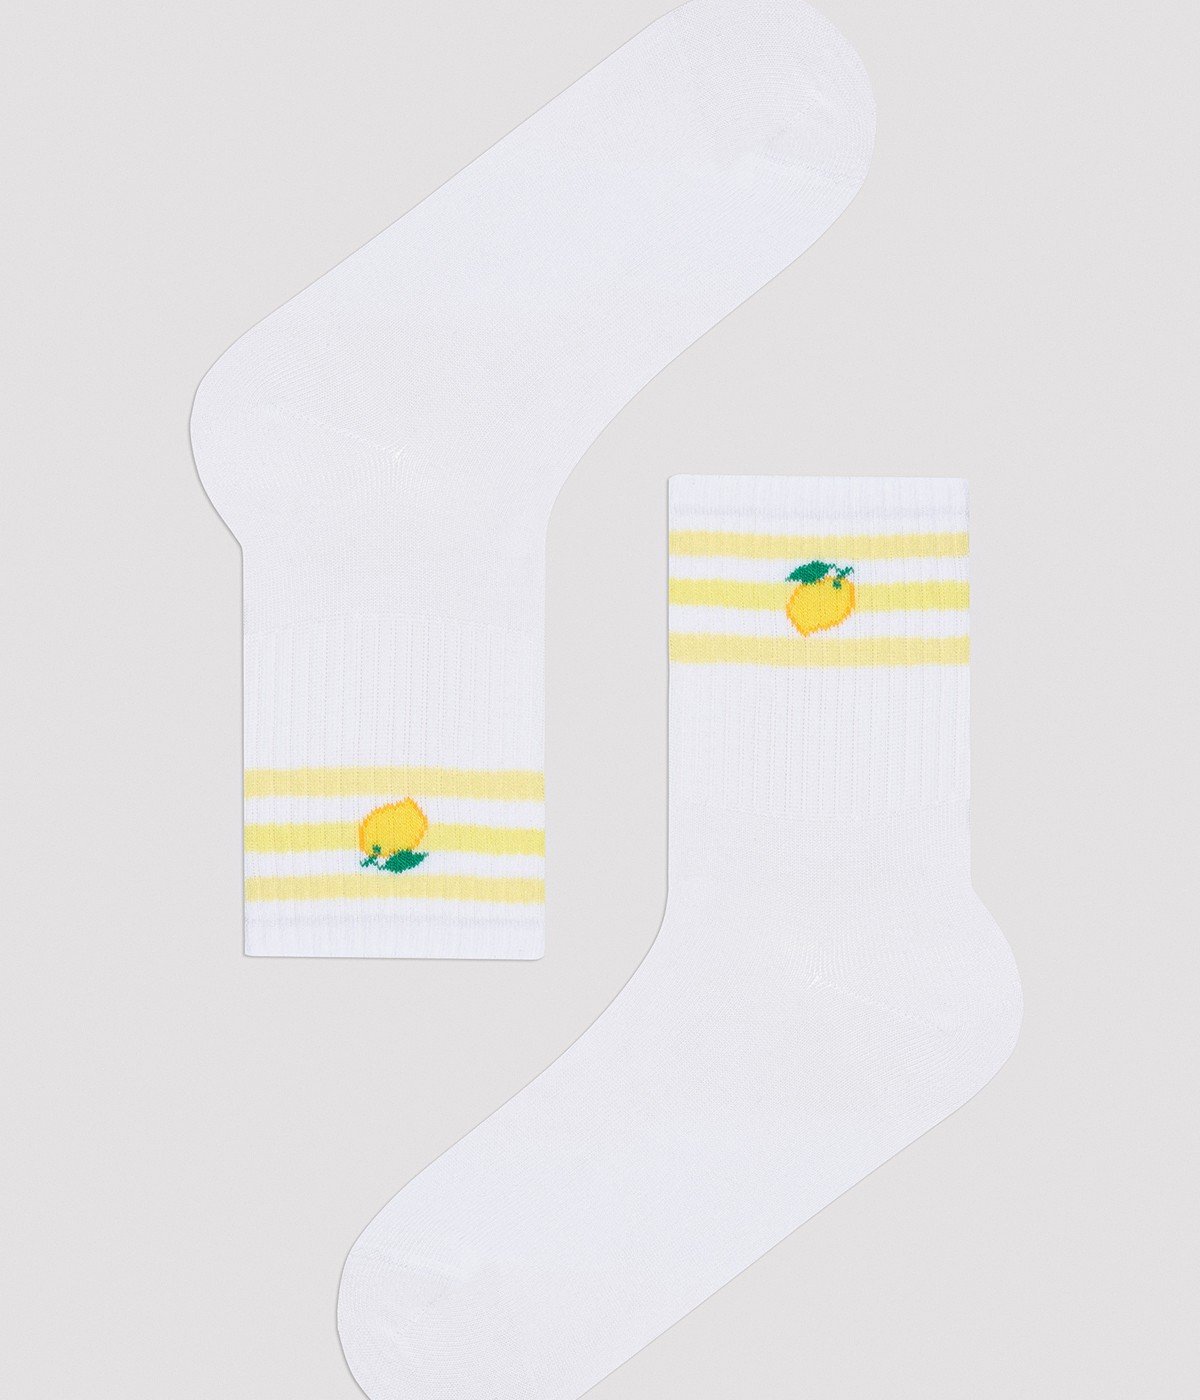 Lemon Tennis Socket Socks